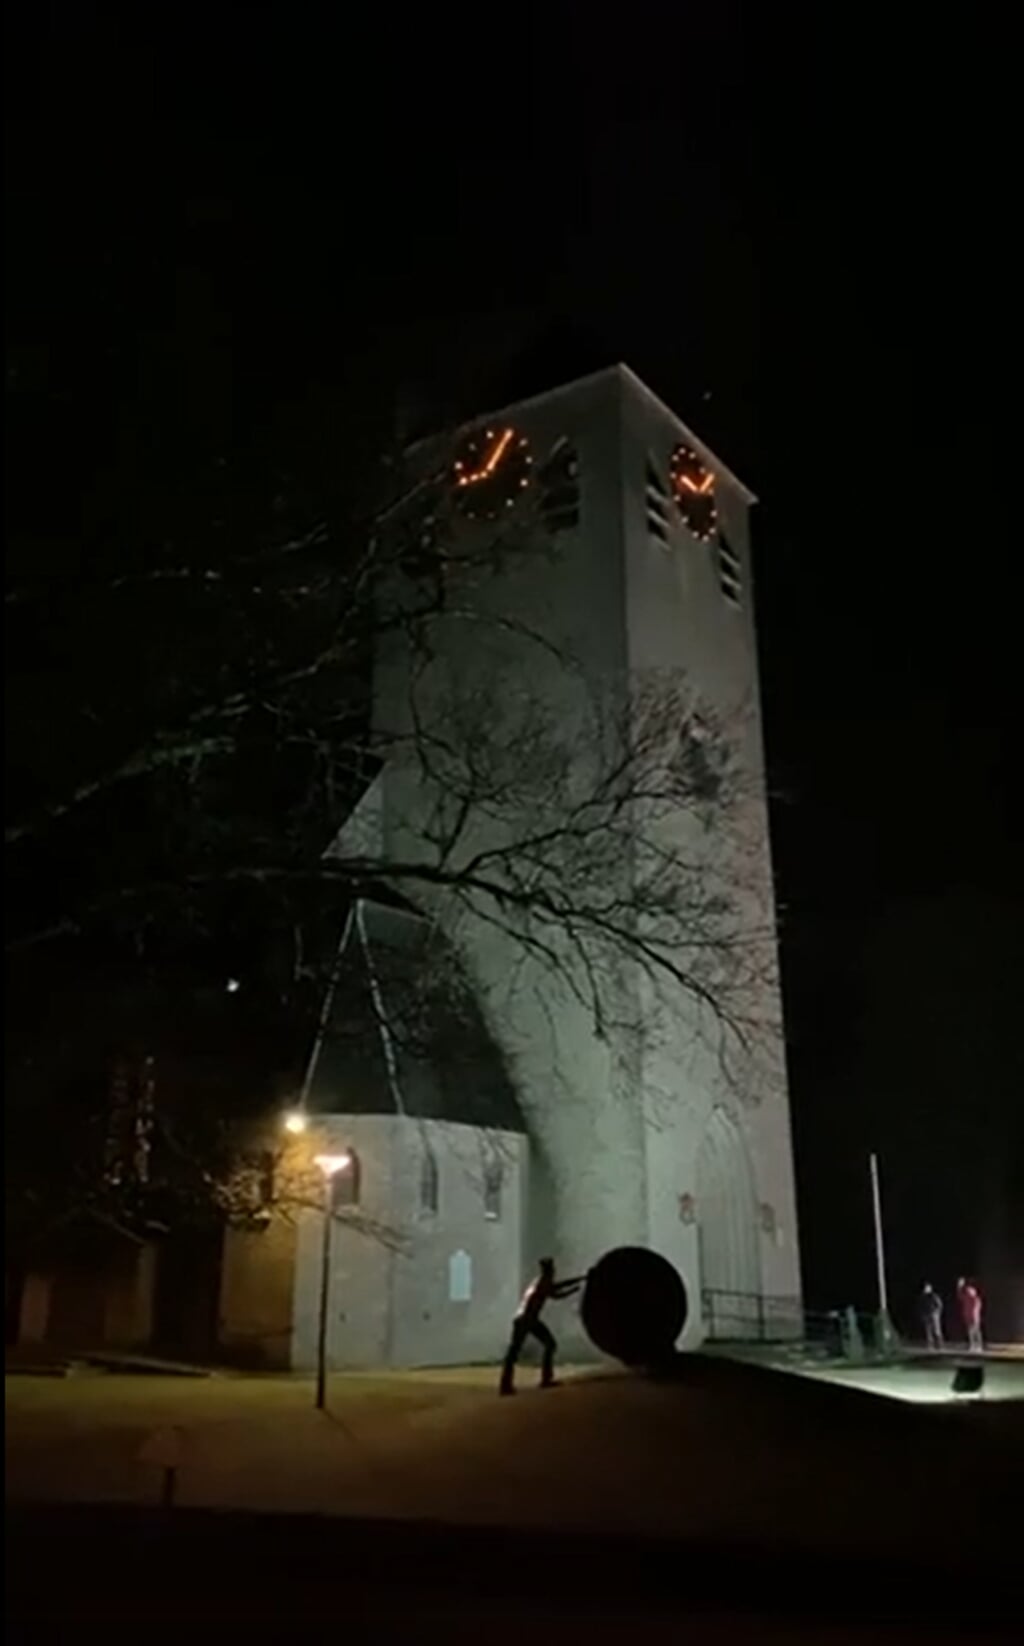 De toren van de kerk in Keijenborg waar kerstliederen klonken tijdens Kerstavond. Foto: screenshot